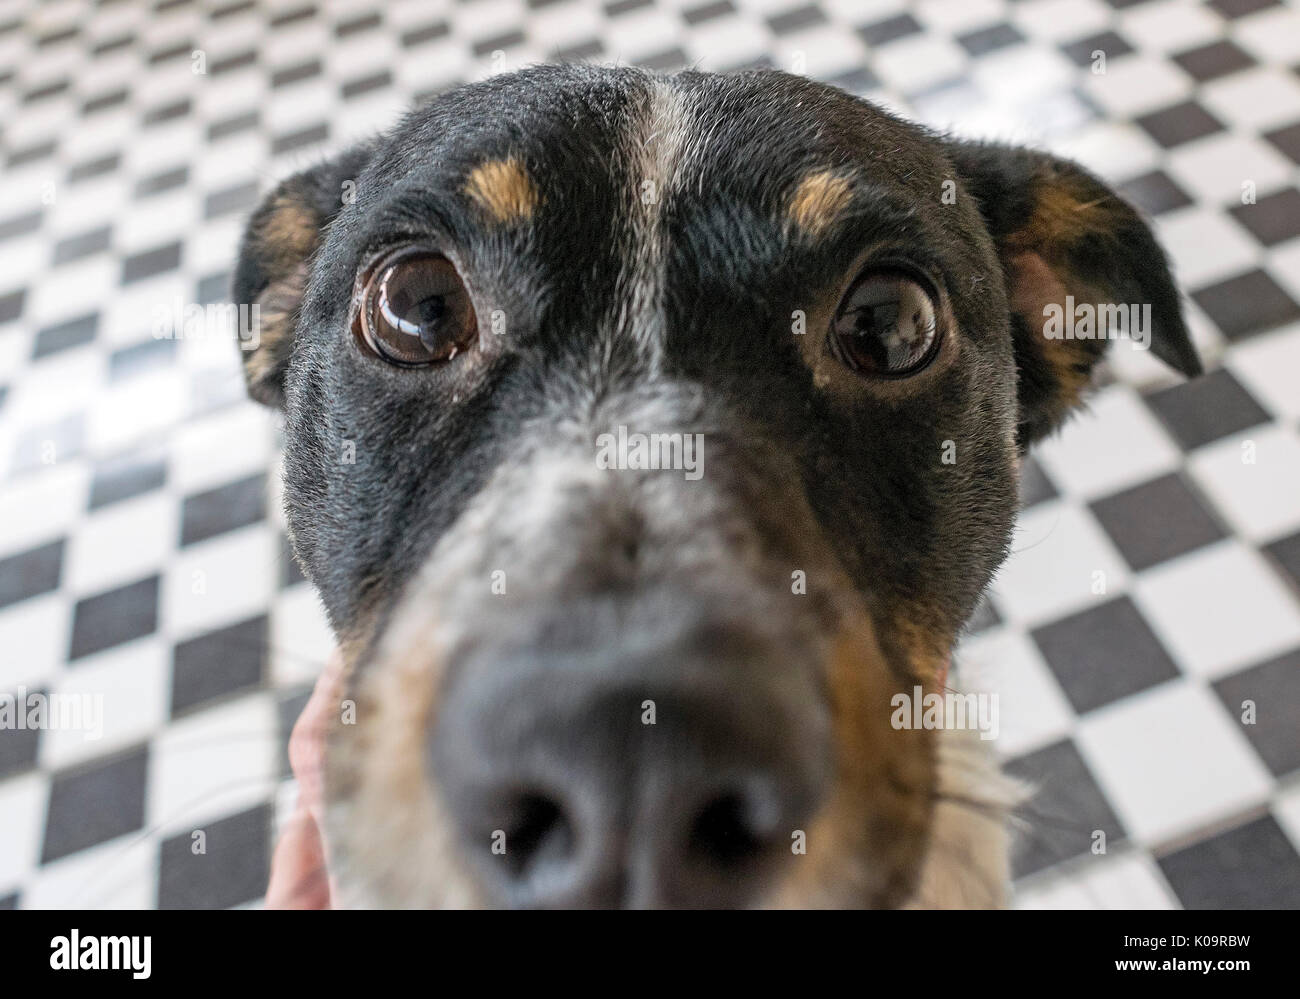 Giocoso dog face, bianco nero e marrone con naso vicino alla lente della fotocamera, la messa a fuoco sulla faccia, closeup, con piastrelle nere e bianche, sfondo Foto Stock